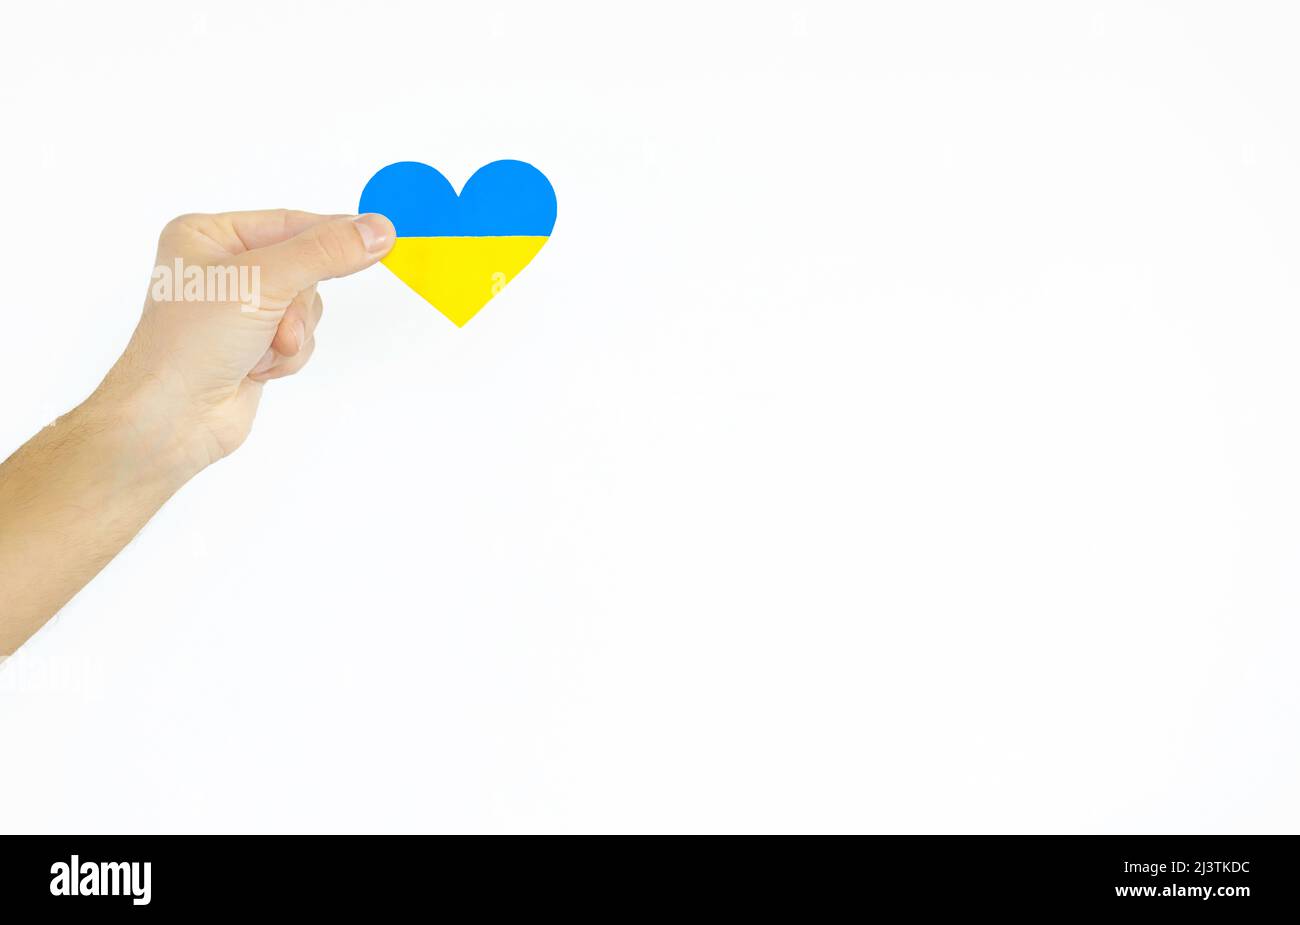 Il concetto di amore per l'Ucraina. Cuore nei colori della bandiera dell'Ucraina nelle mani degli uomini su uno sfondo bianco. Foto Stock